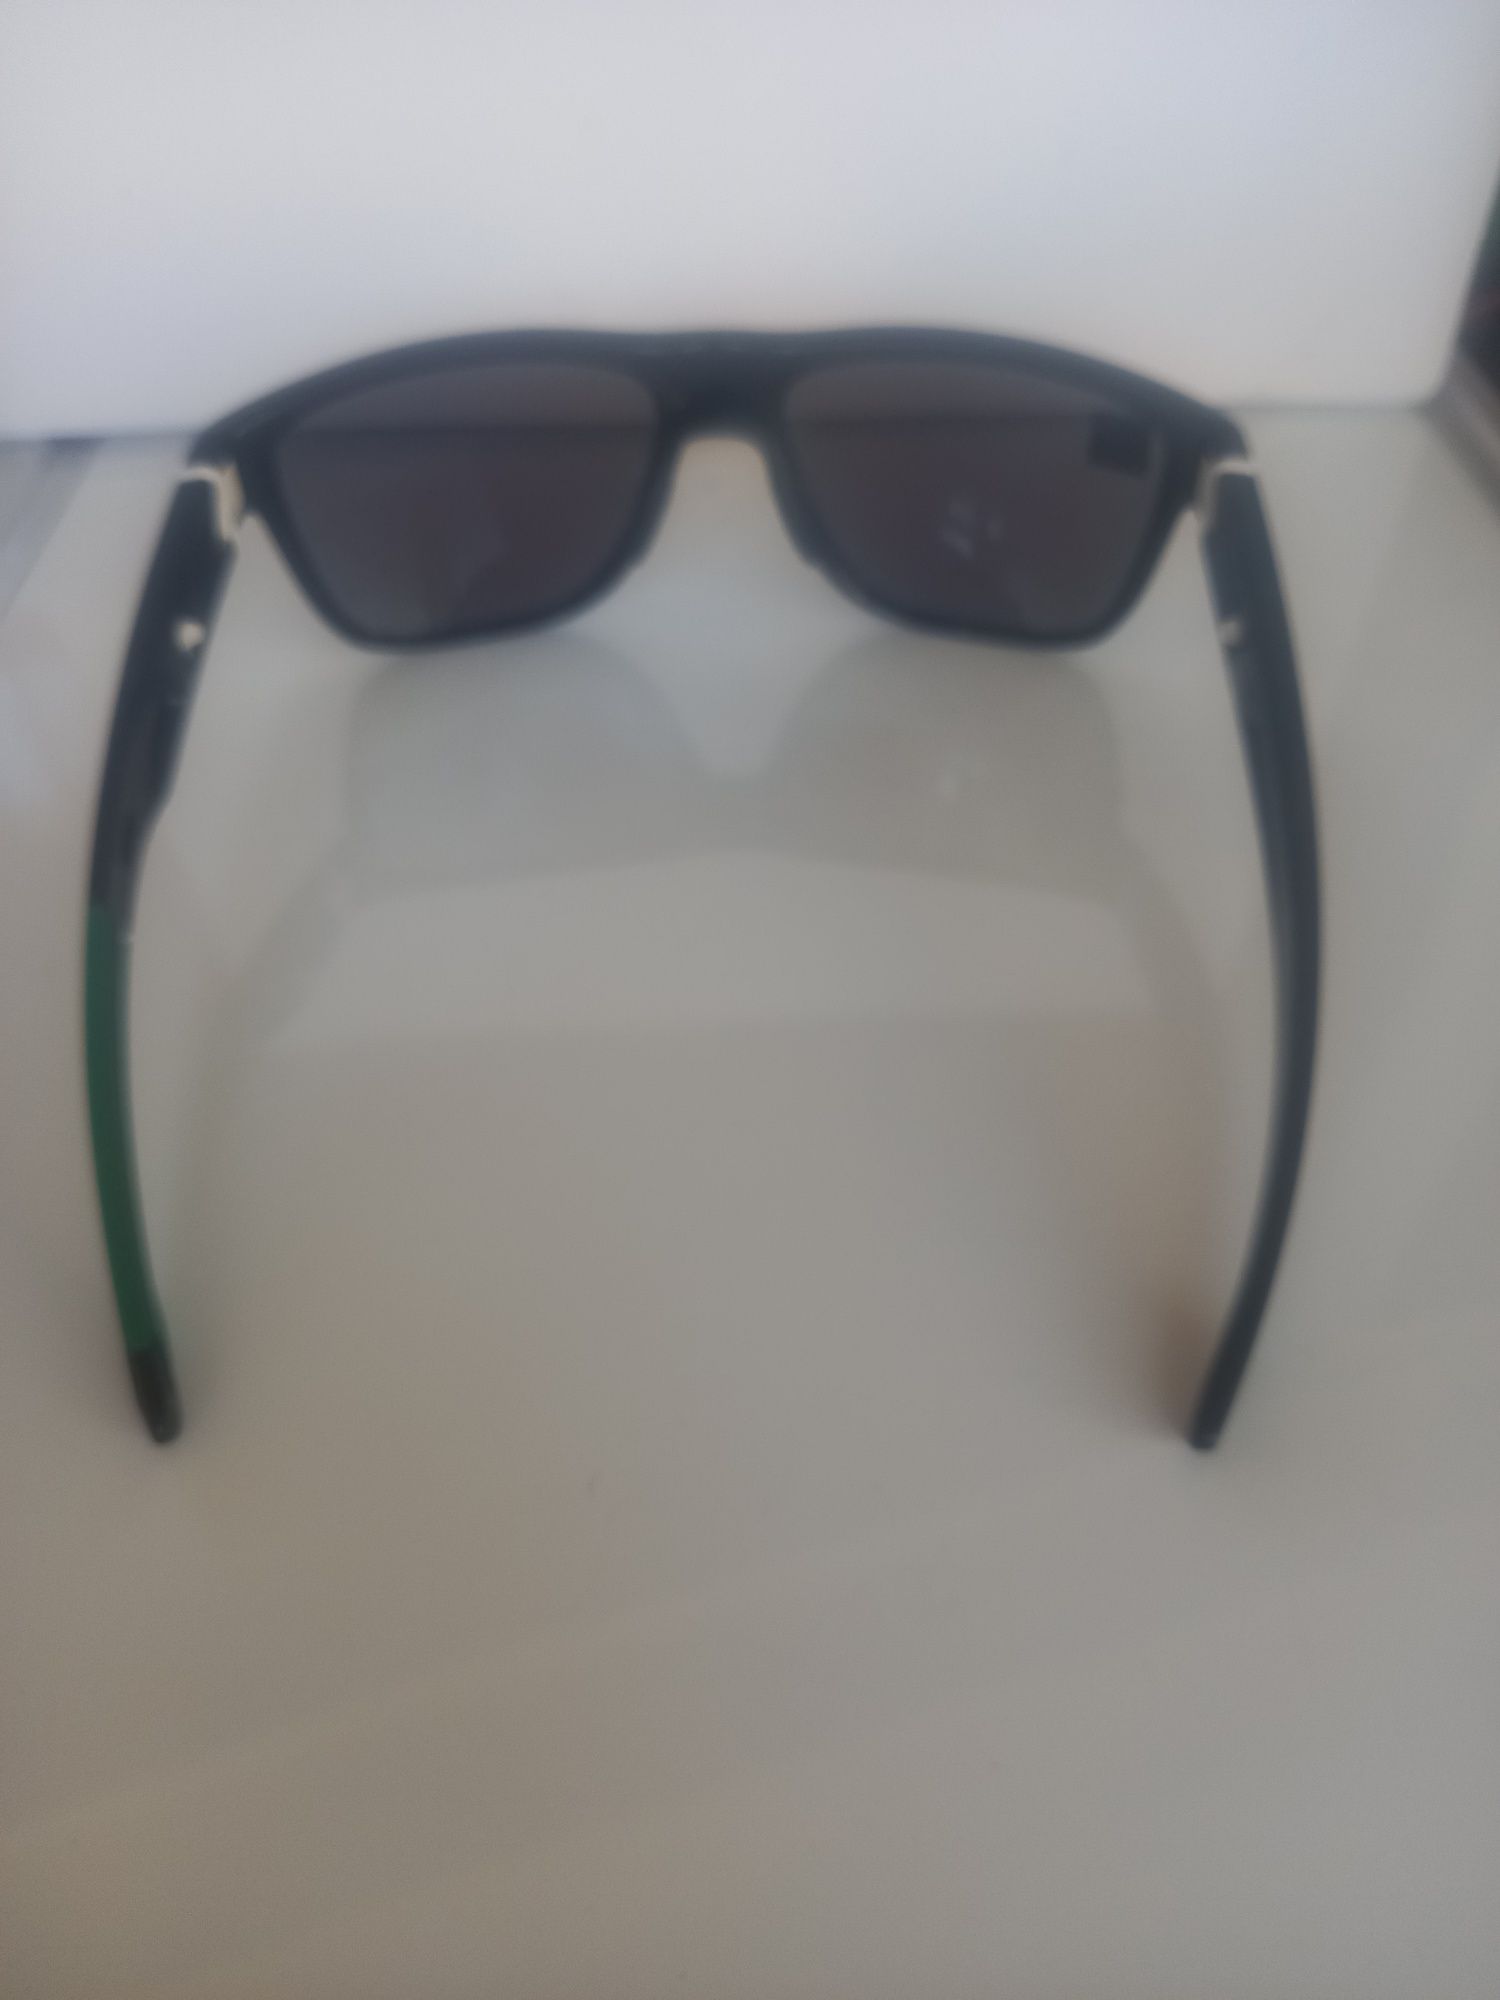 Слънчеви очила Oakley Crossrange